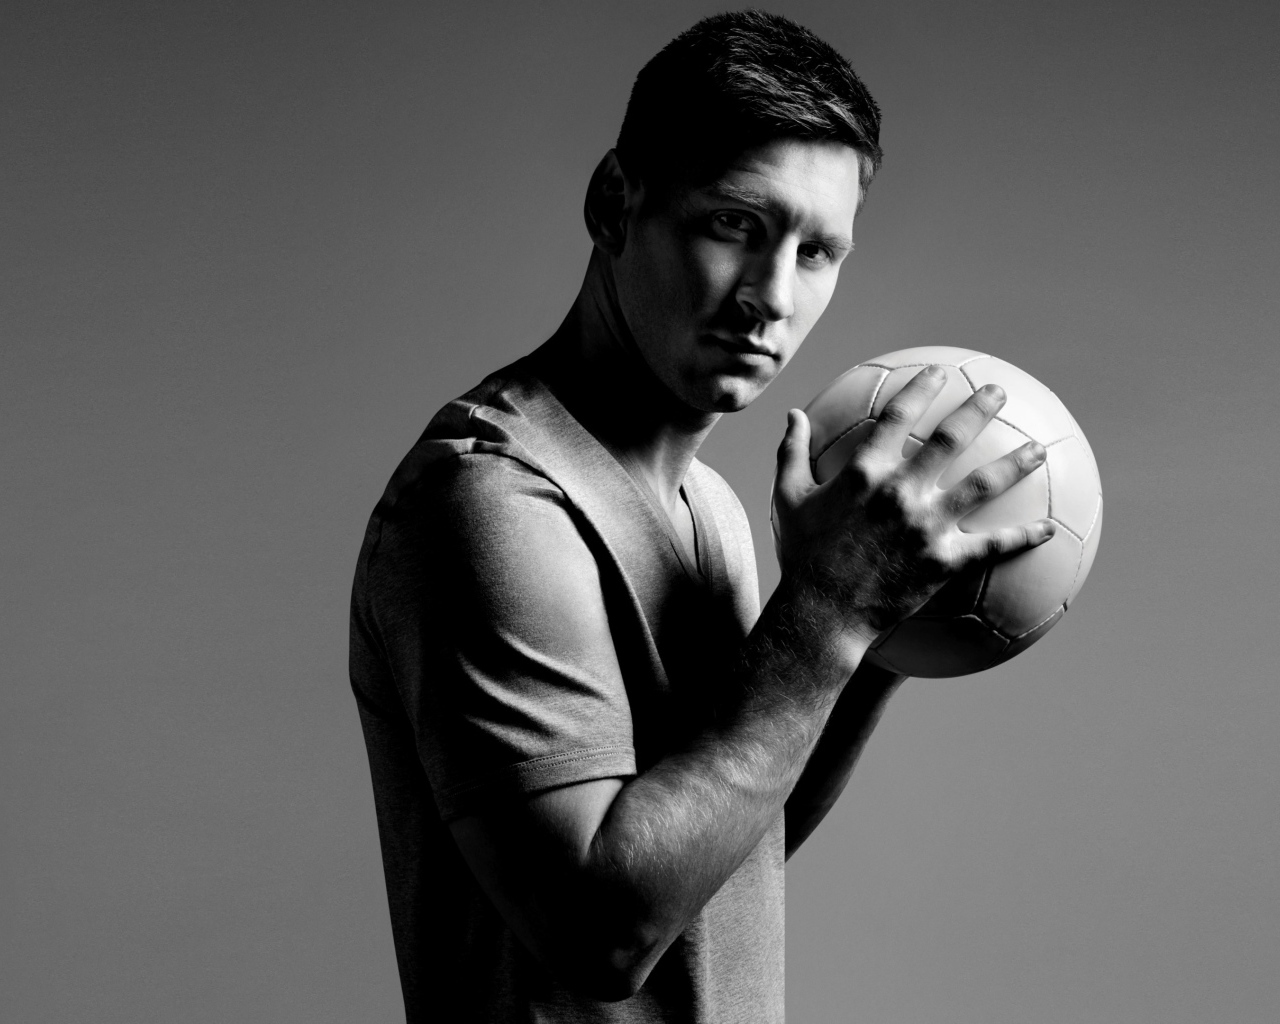 Футболист Лионель Месси с мячом в руках на сером фоне